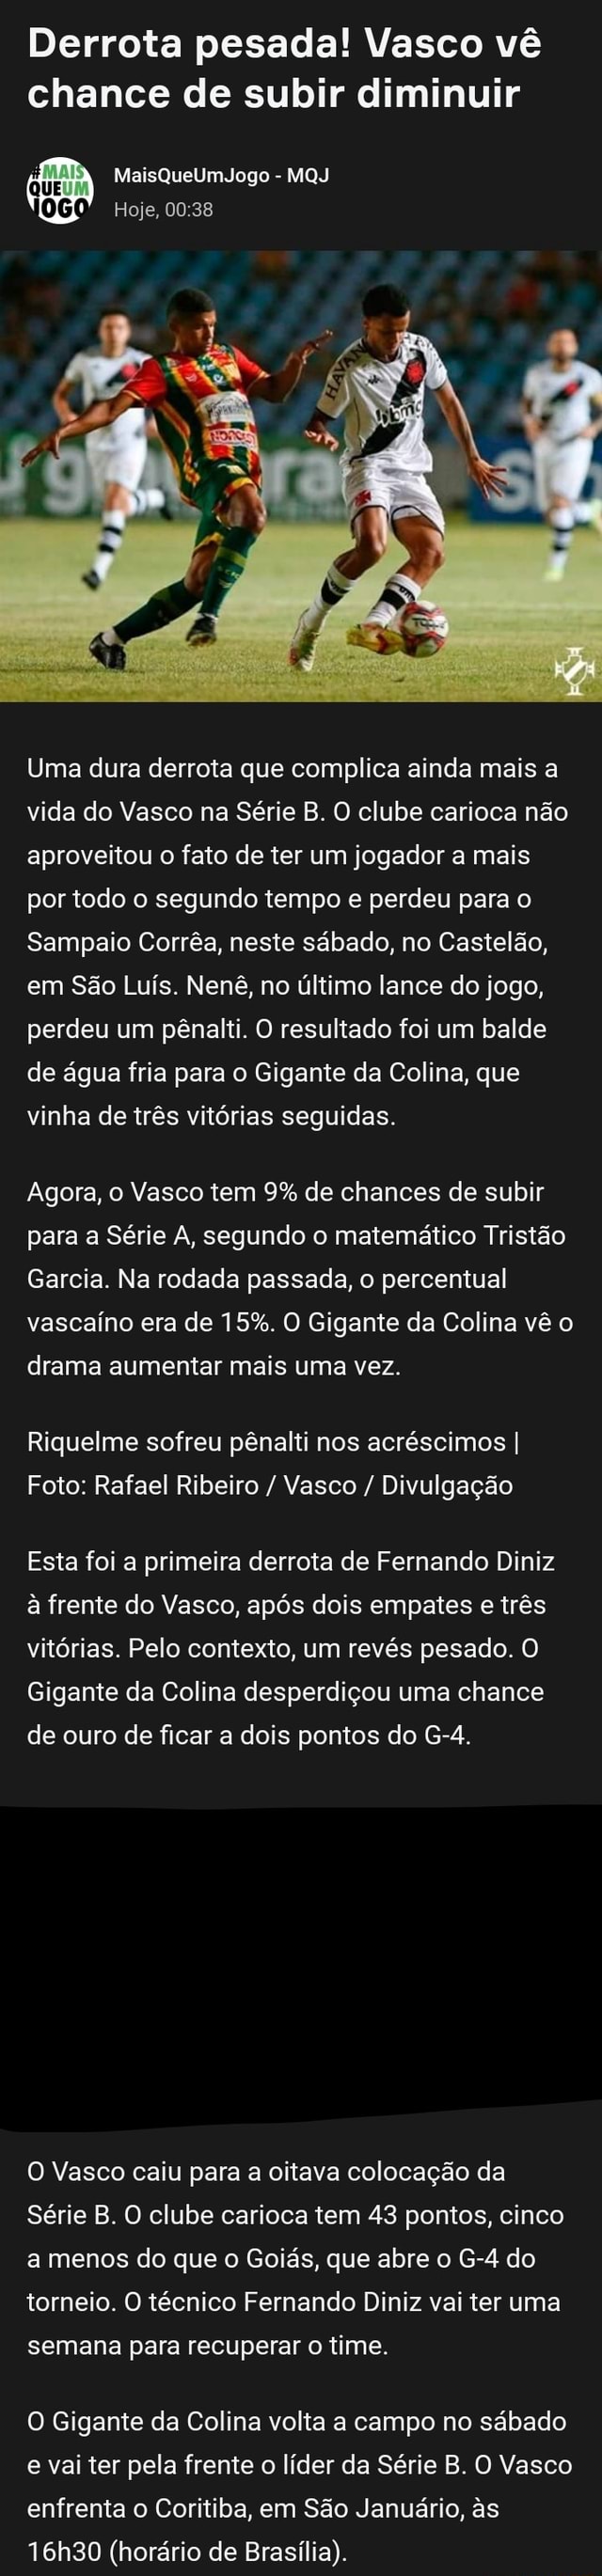 Vasco perde para Sampaio Corrêa, mas pode subir com combinação de  resultados